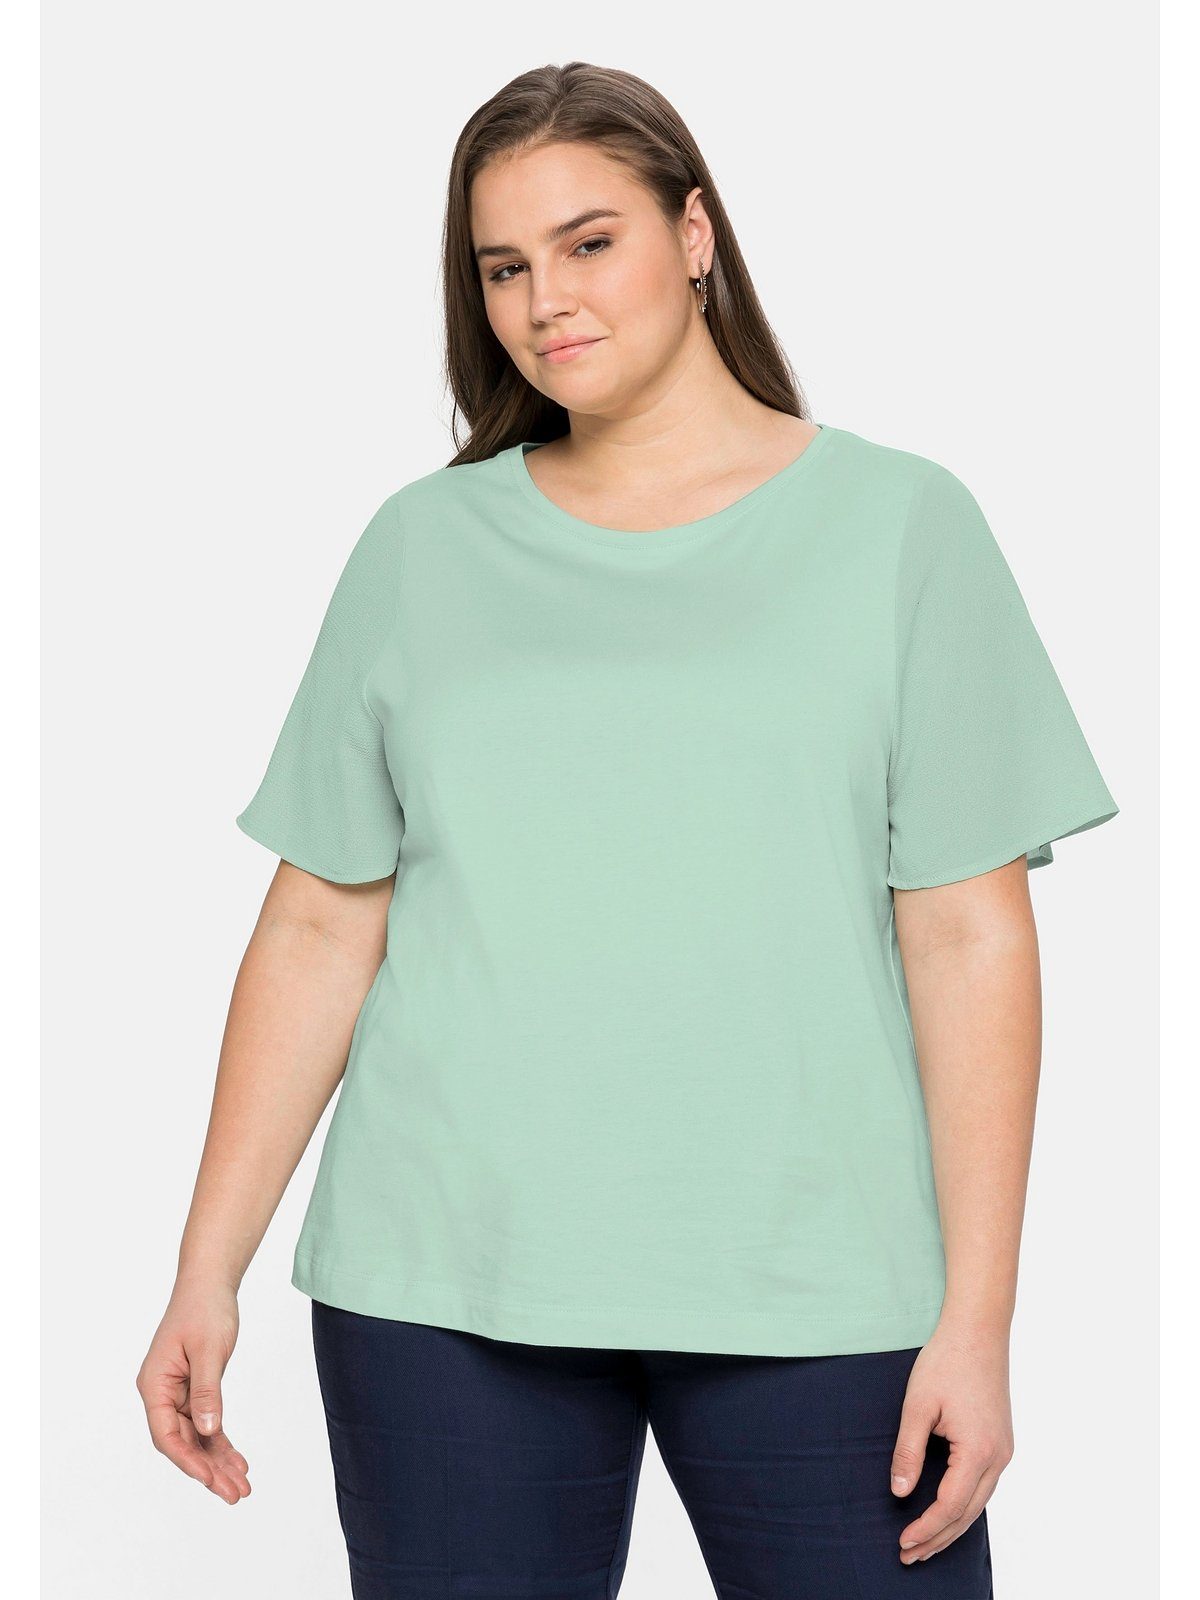 Sheego T-Shirt Große Größen weiten mit Materialmix Ärmeln, im